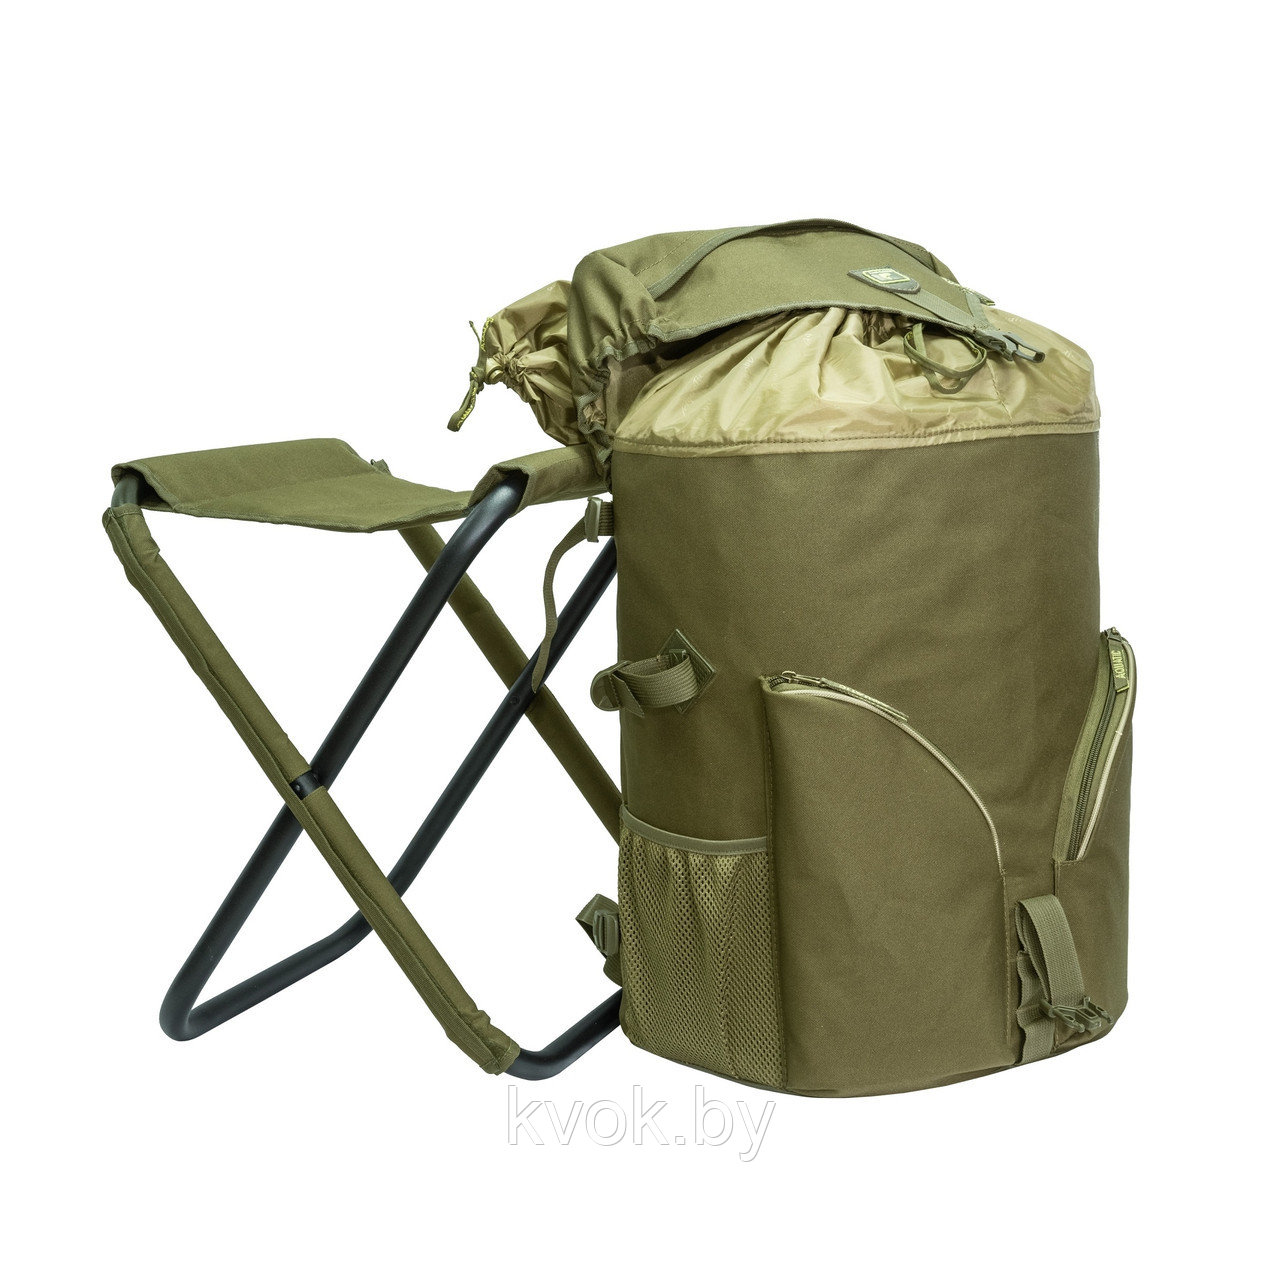 Рюкзак AQUATIC РСТ-50 рыболовный со стулом